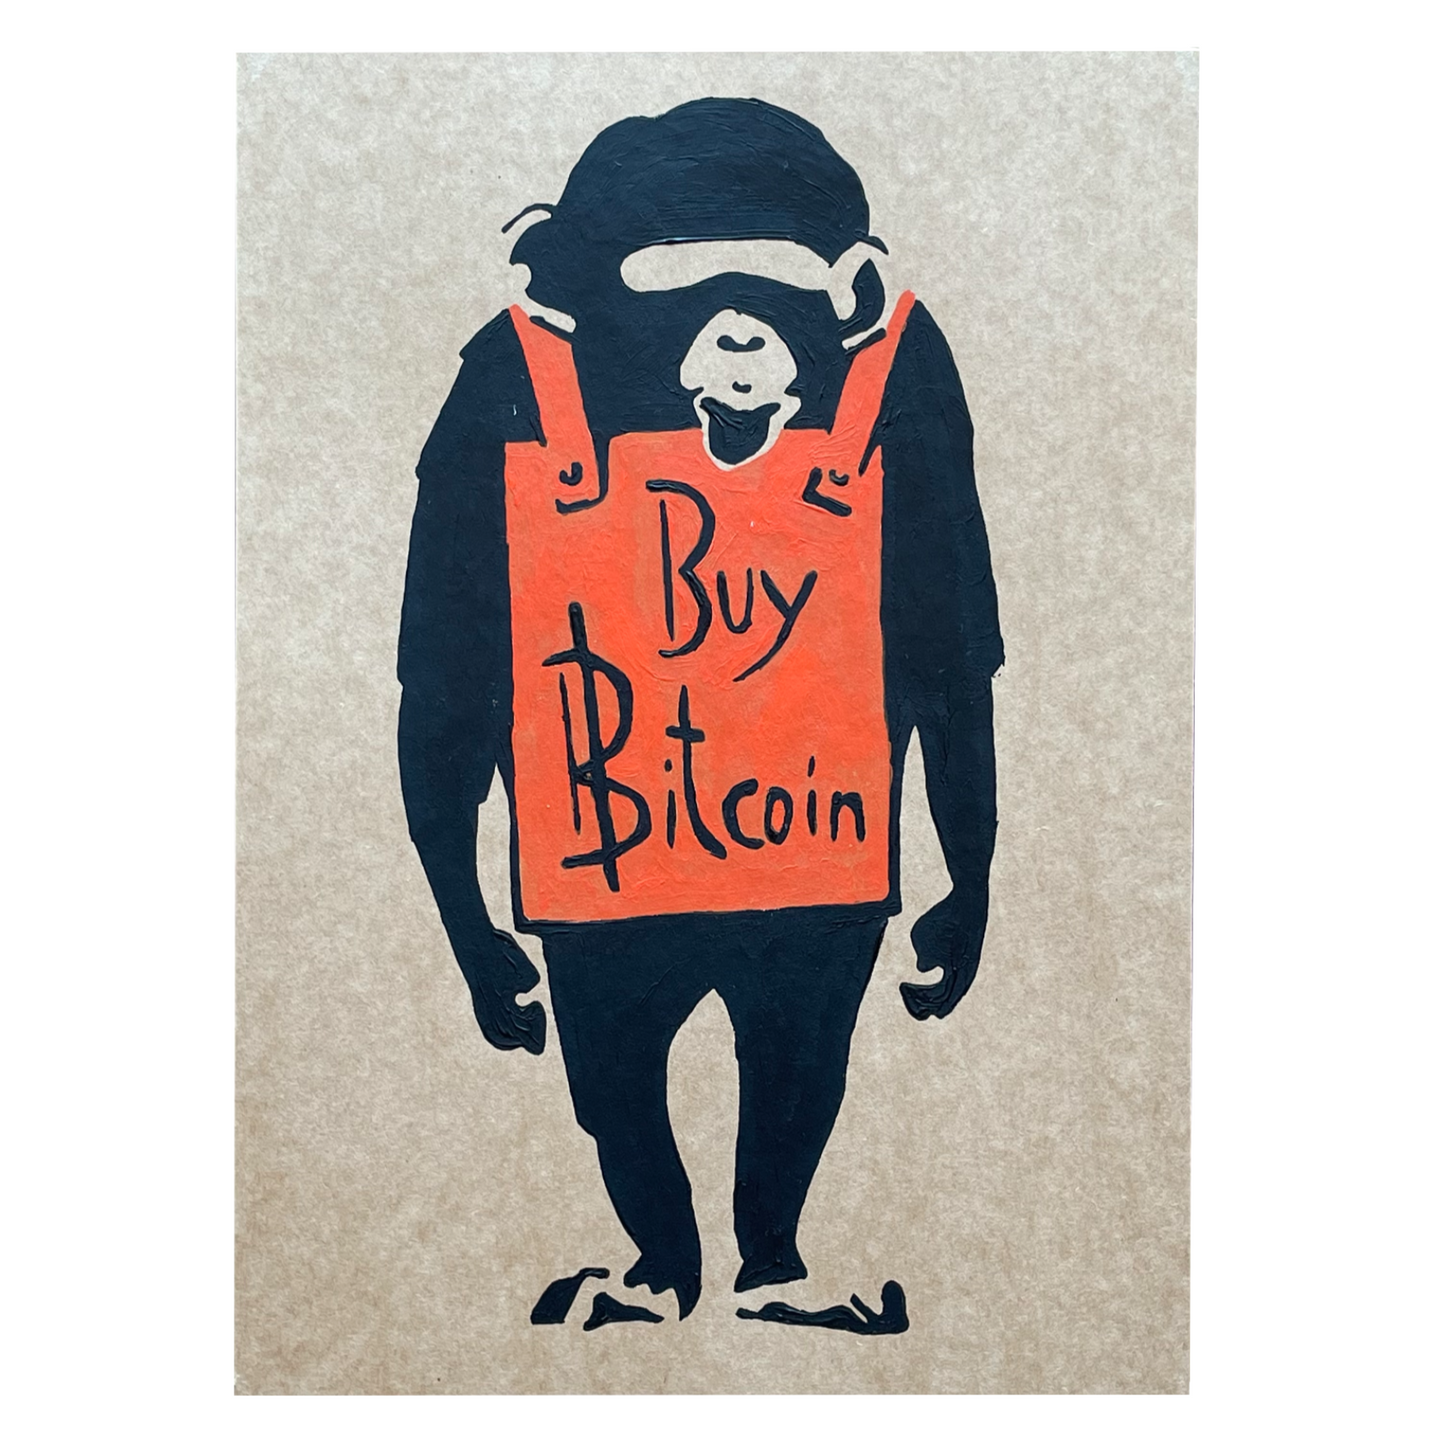 Acrylic Paint on Cardboard A4 "Buy Bitcoin"